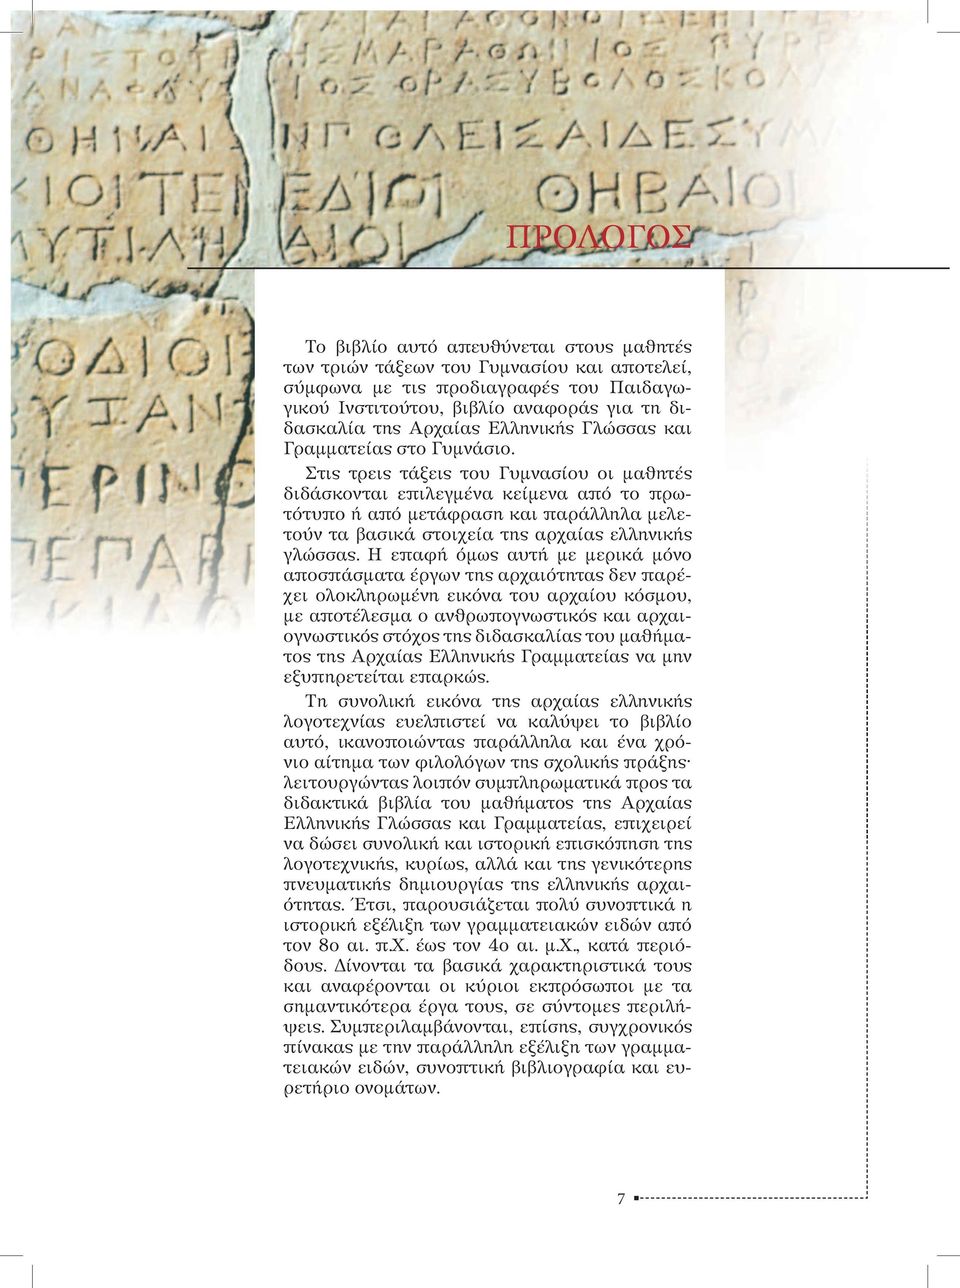 Στις τρεις τάξεις του Γυμνασίου οι μαθητές διδάσκονται επιλεγμένα κείμενα από το πρωτότυπο ή από μετάφραση και παράλληλα μελετούν τα βασικά στοιχεία της αρχαίας ελληνικής γλώσσας.